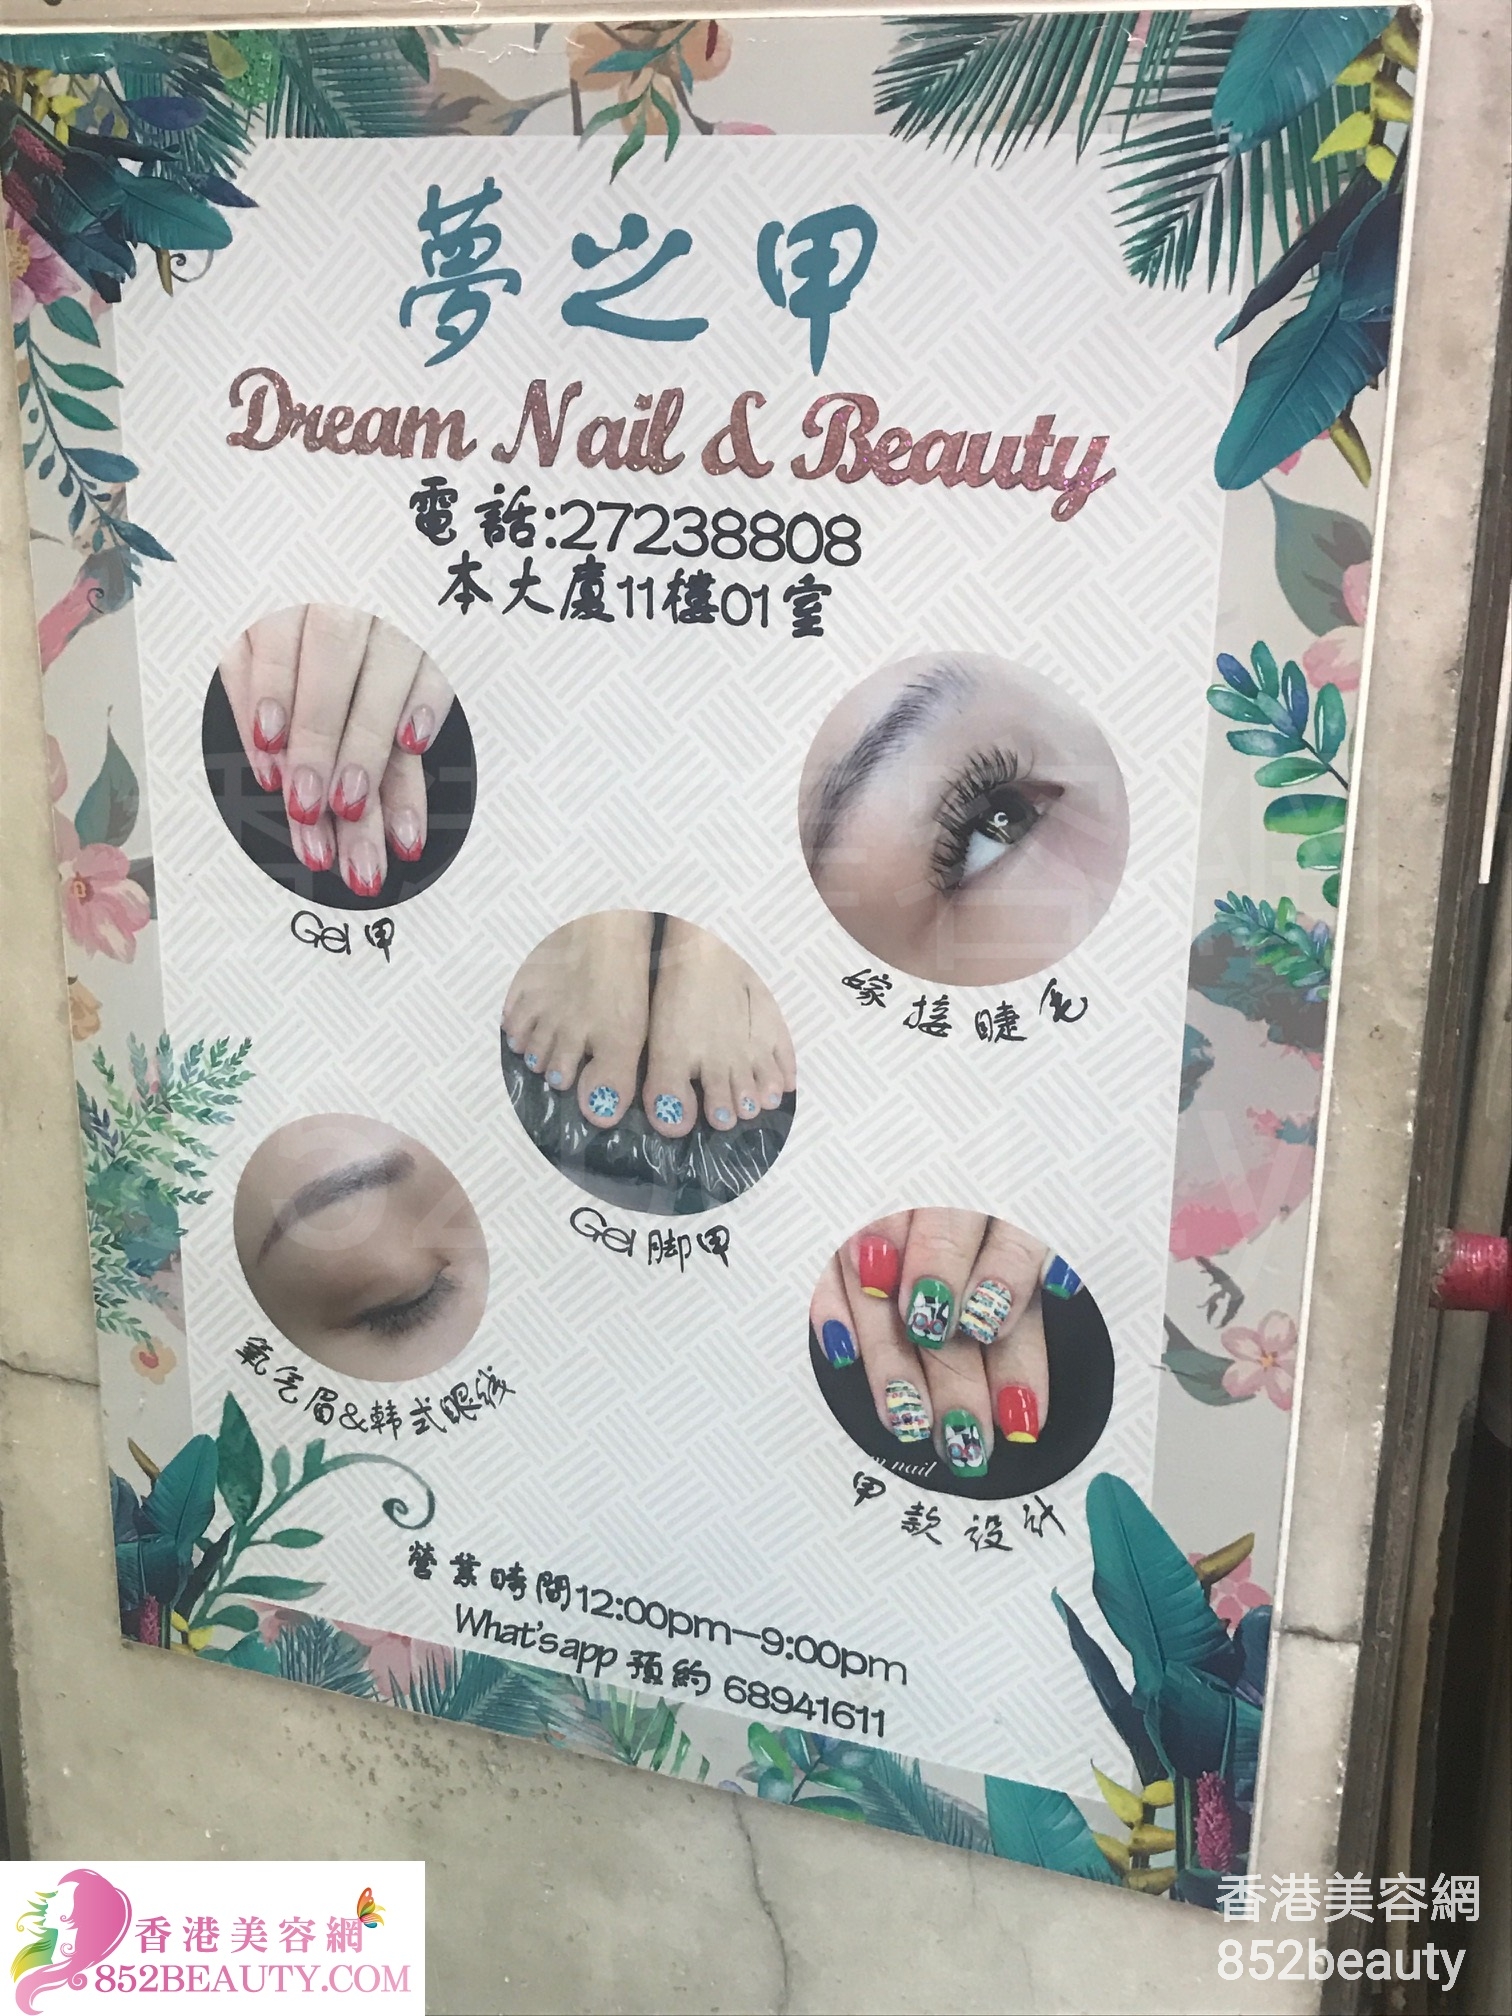 美容院: 夢之甲 Dream Nail & Beauty (已結業)